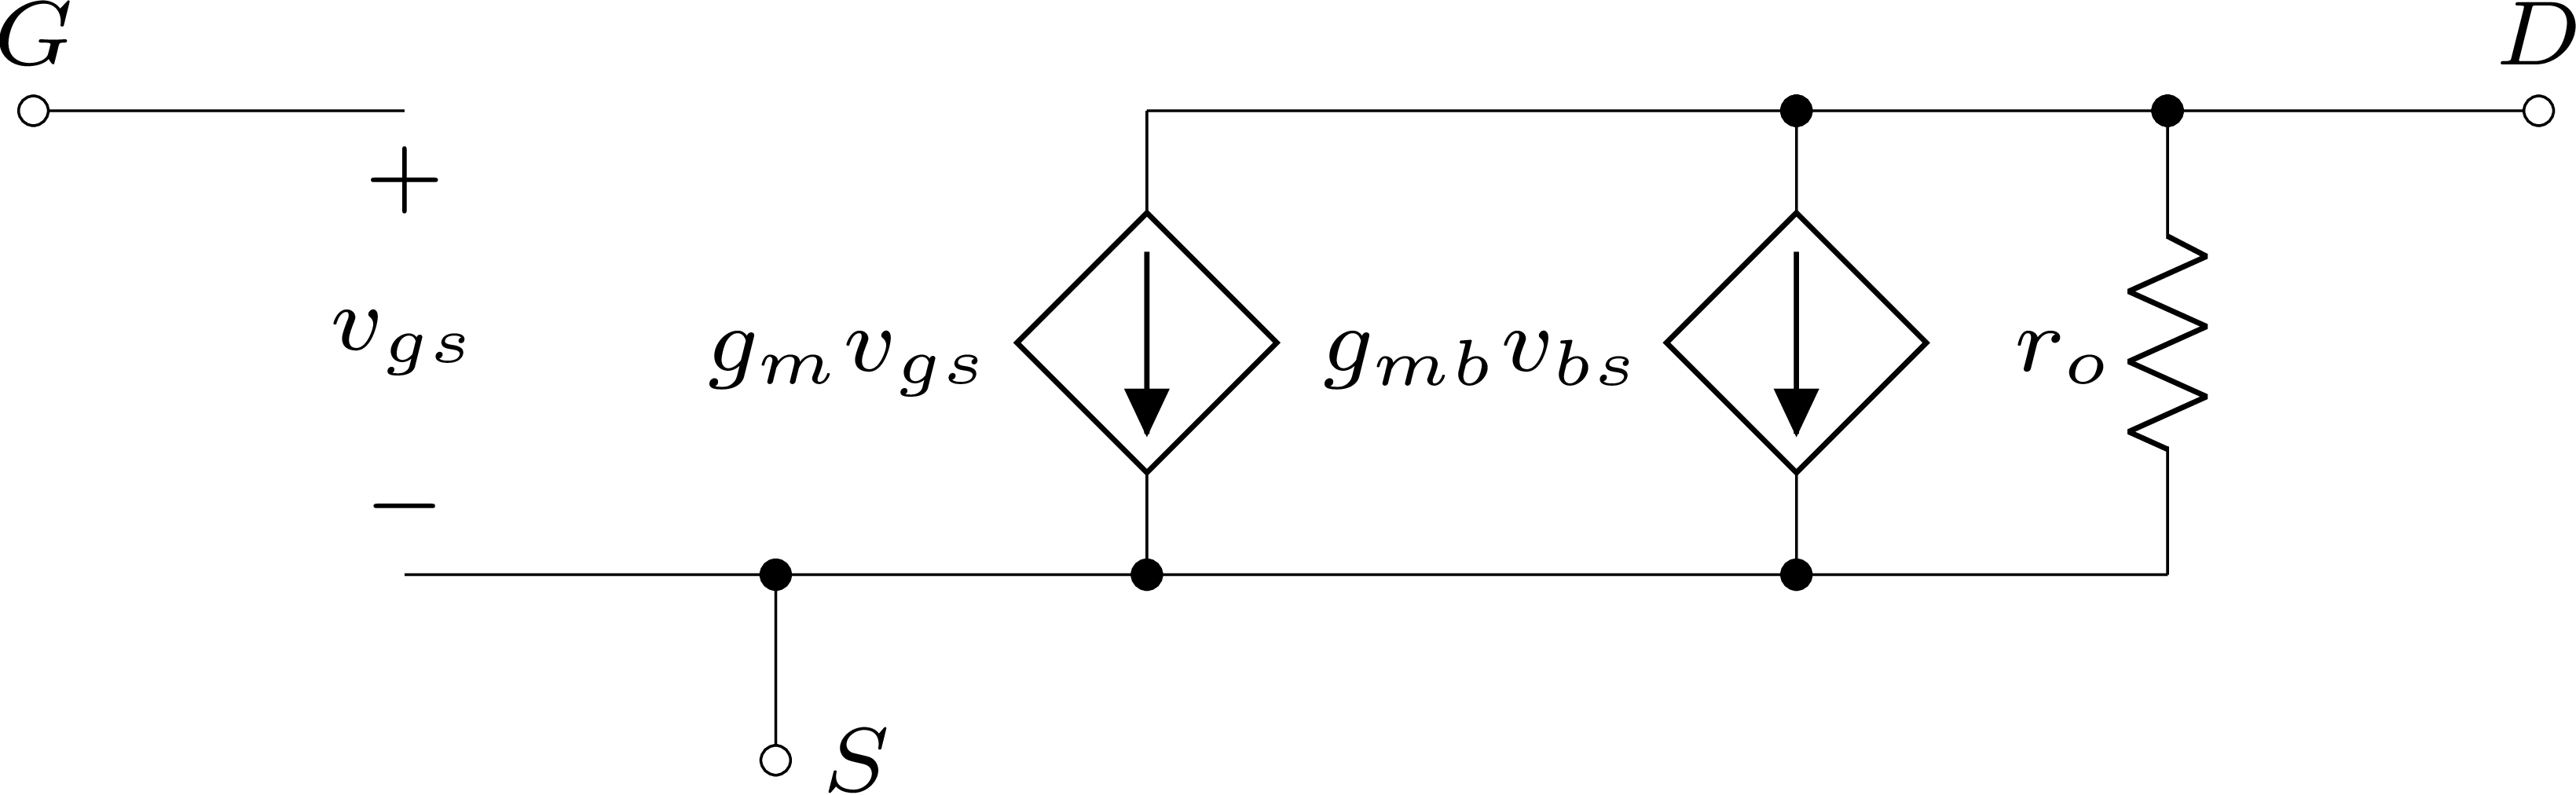 Modelo de pequenos sinais de MOSFET para baixas frequências.